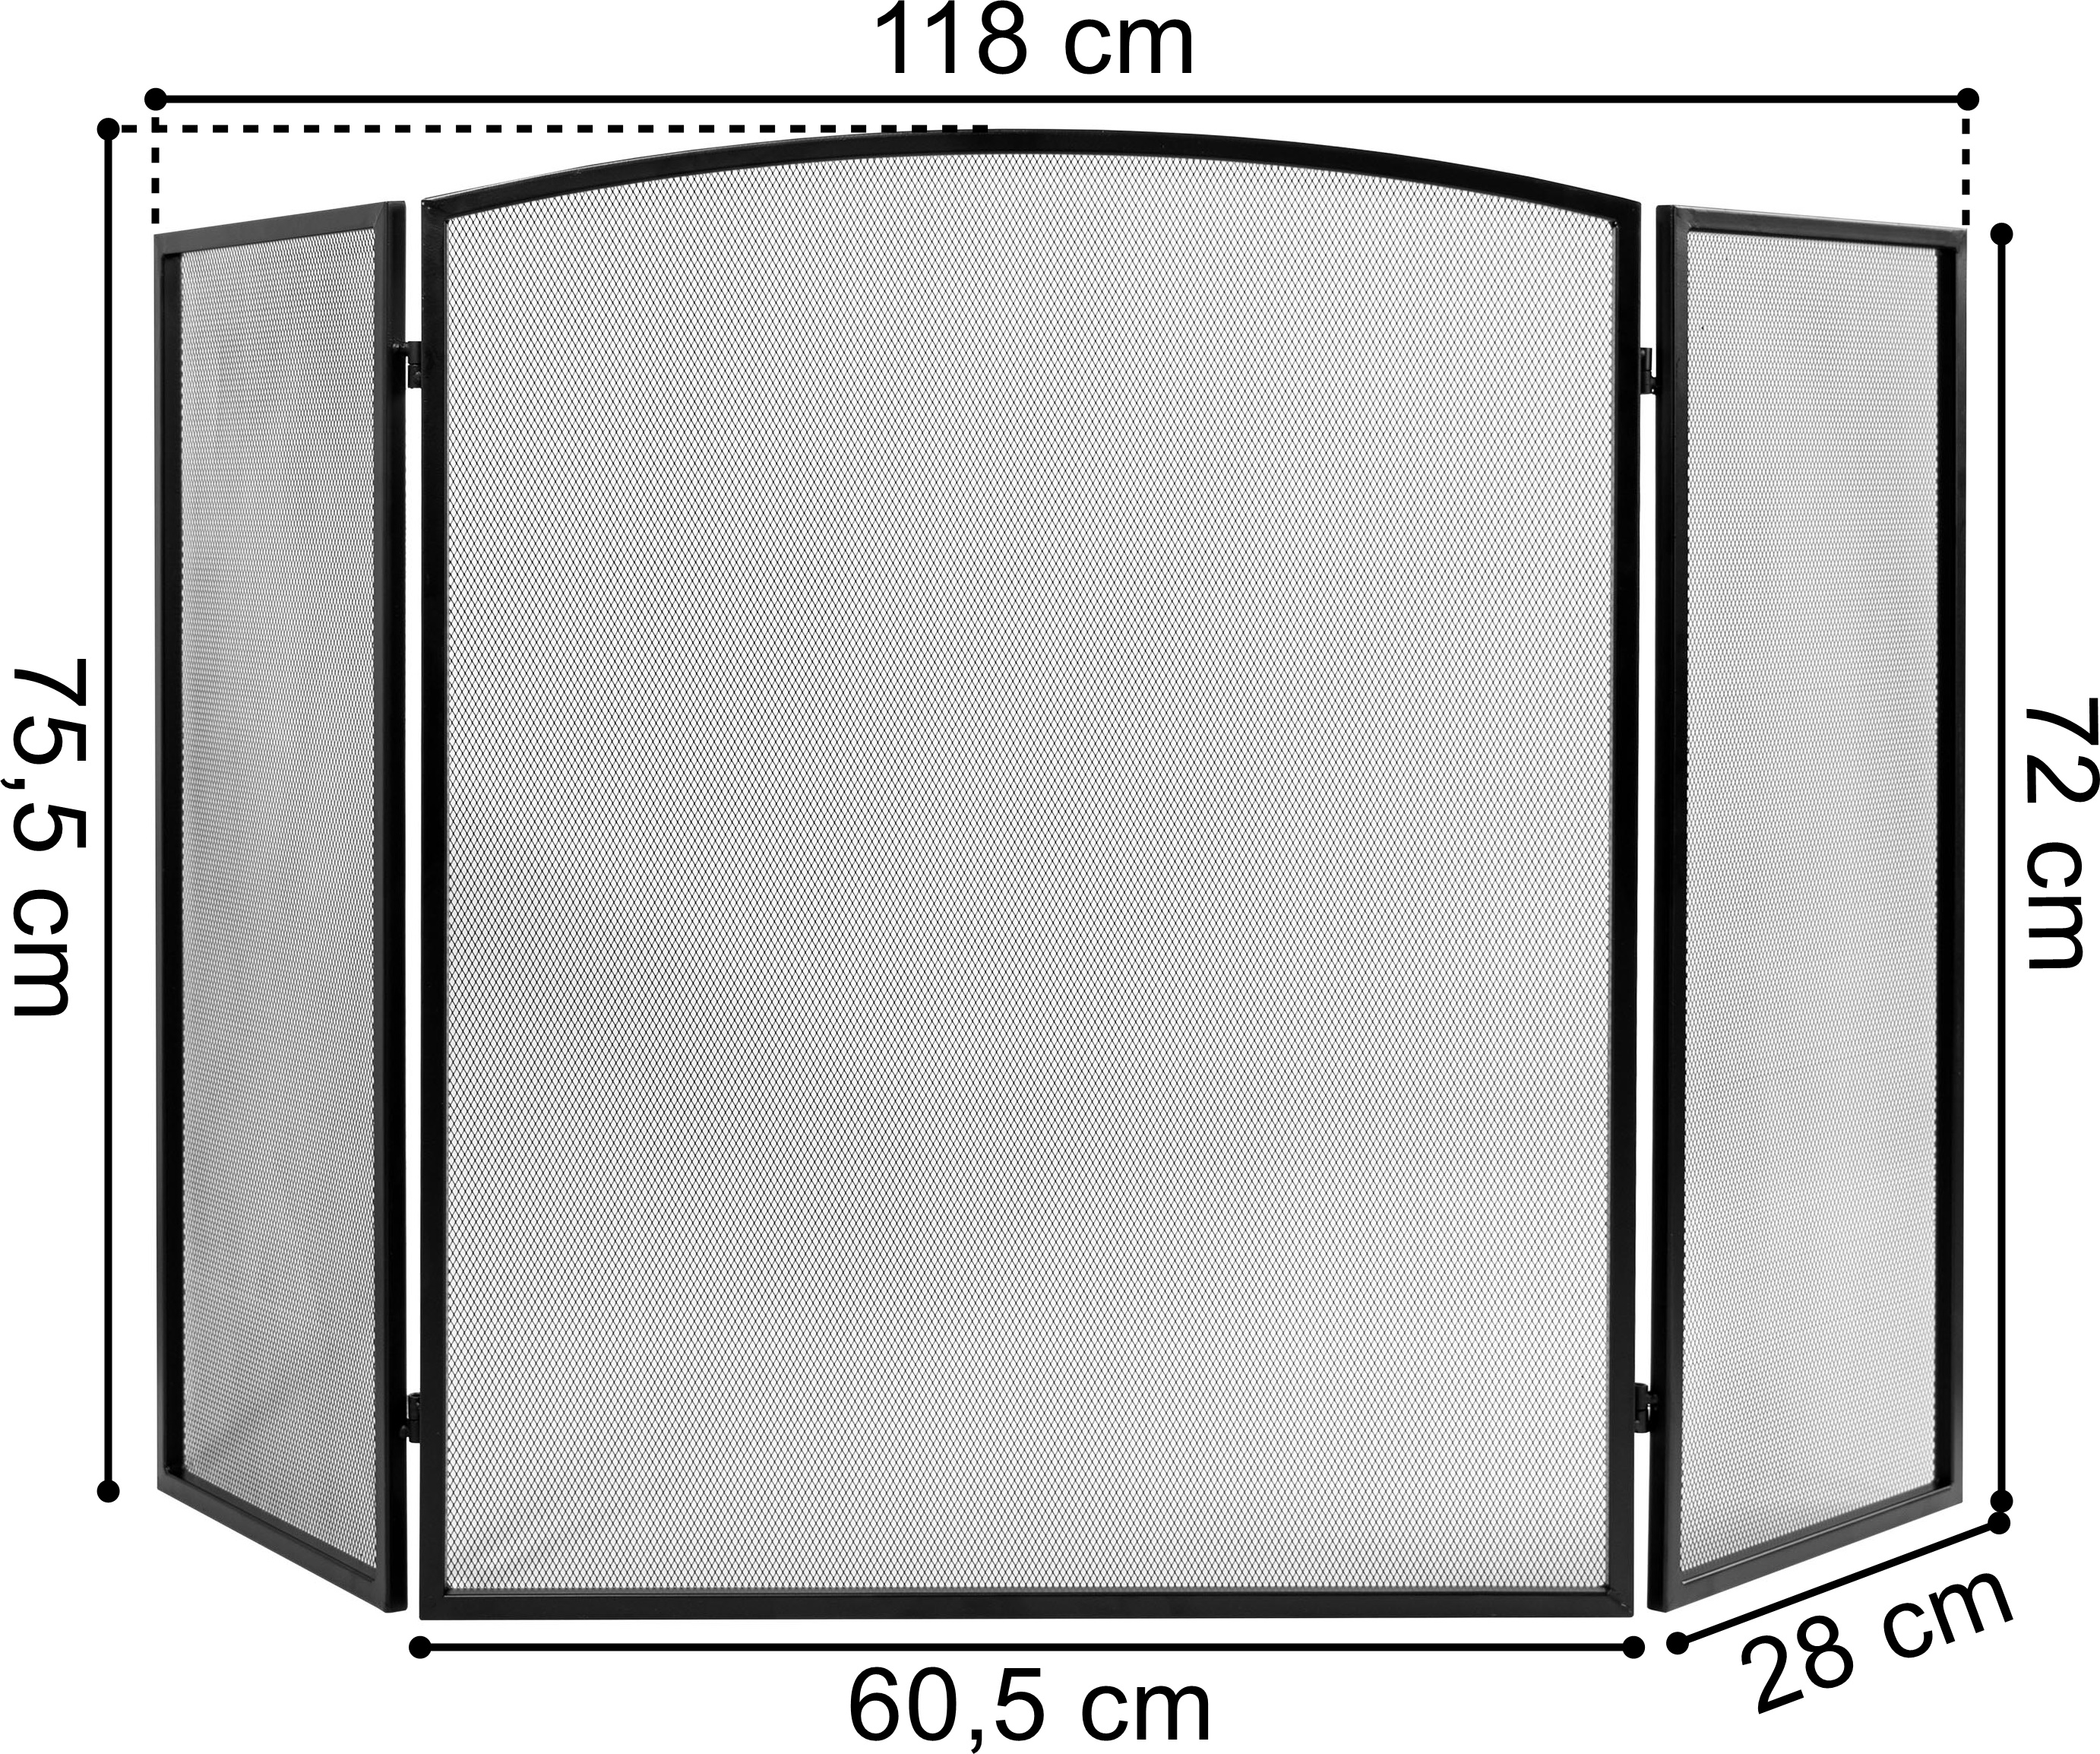 Duża osłona kominkowa ekran WESTA 118 cm